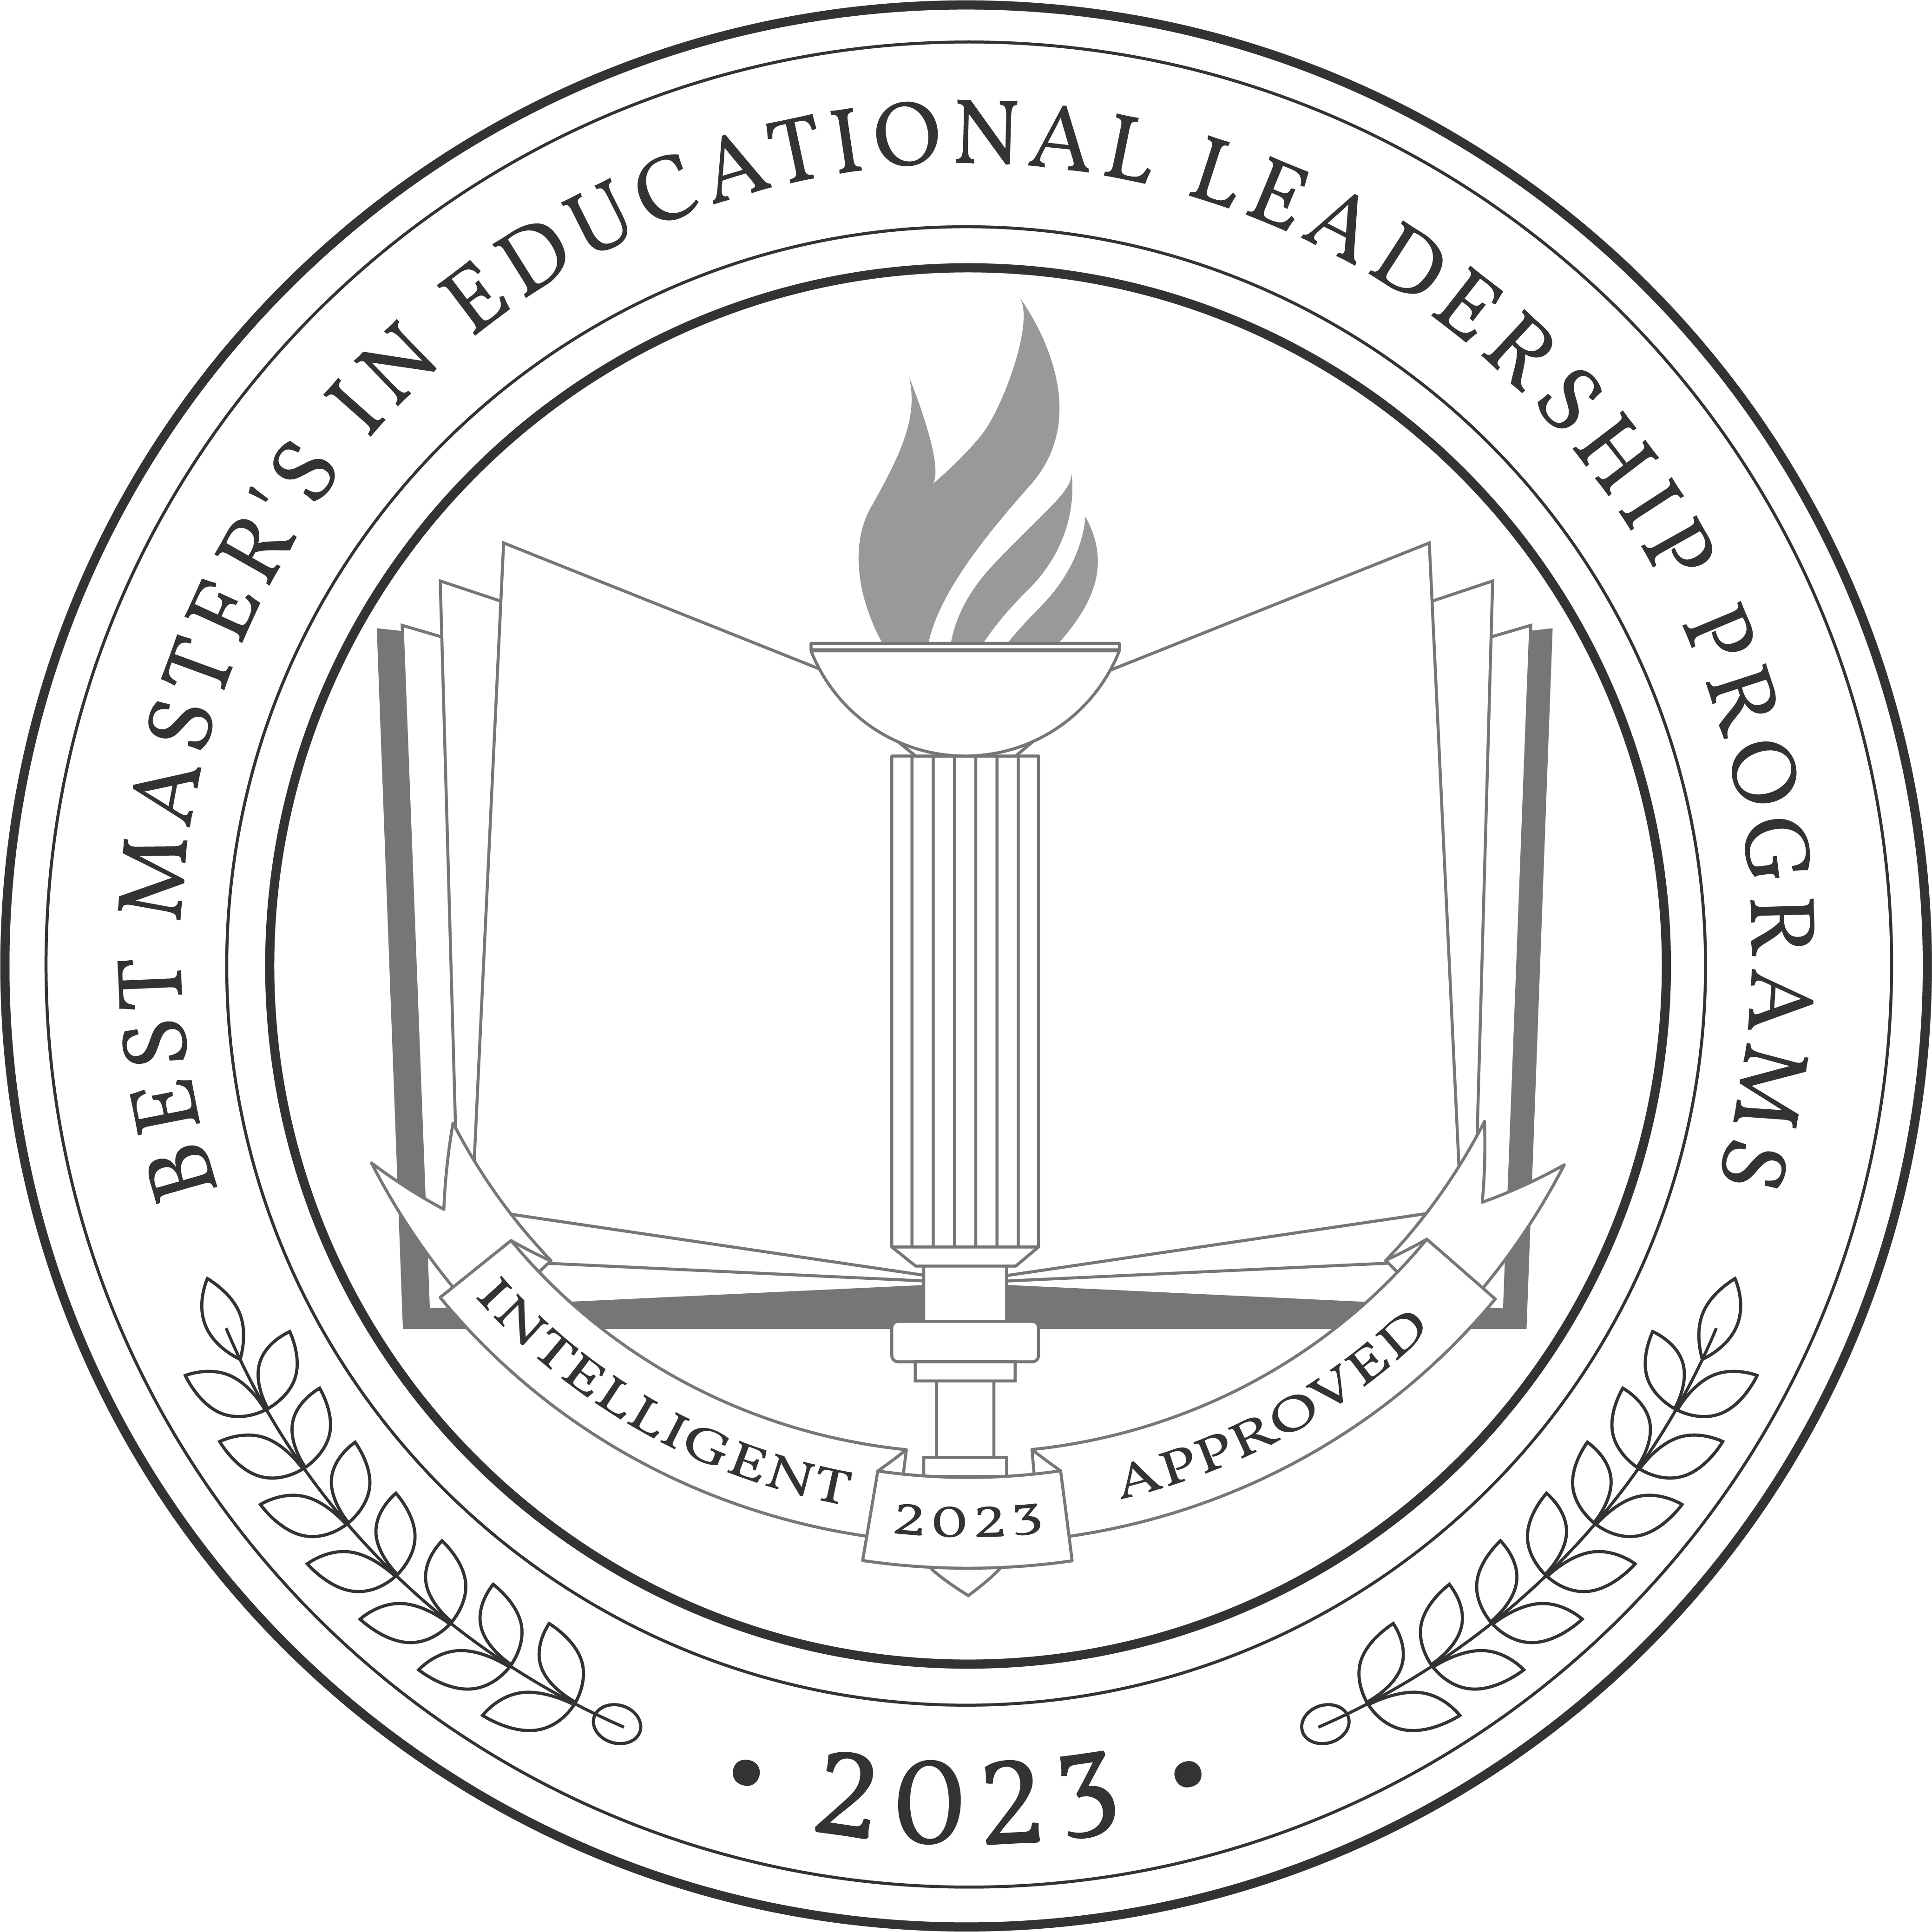 Best Master's in Educational Leadership Programs 2023